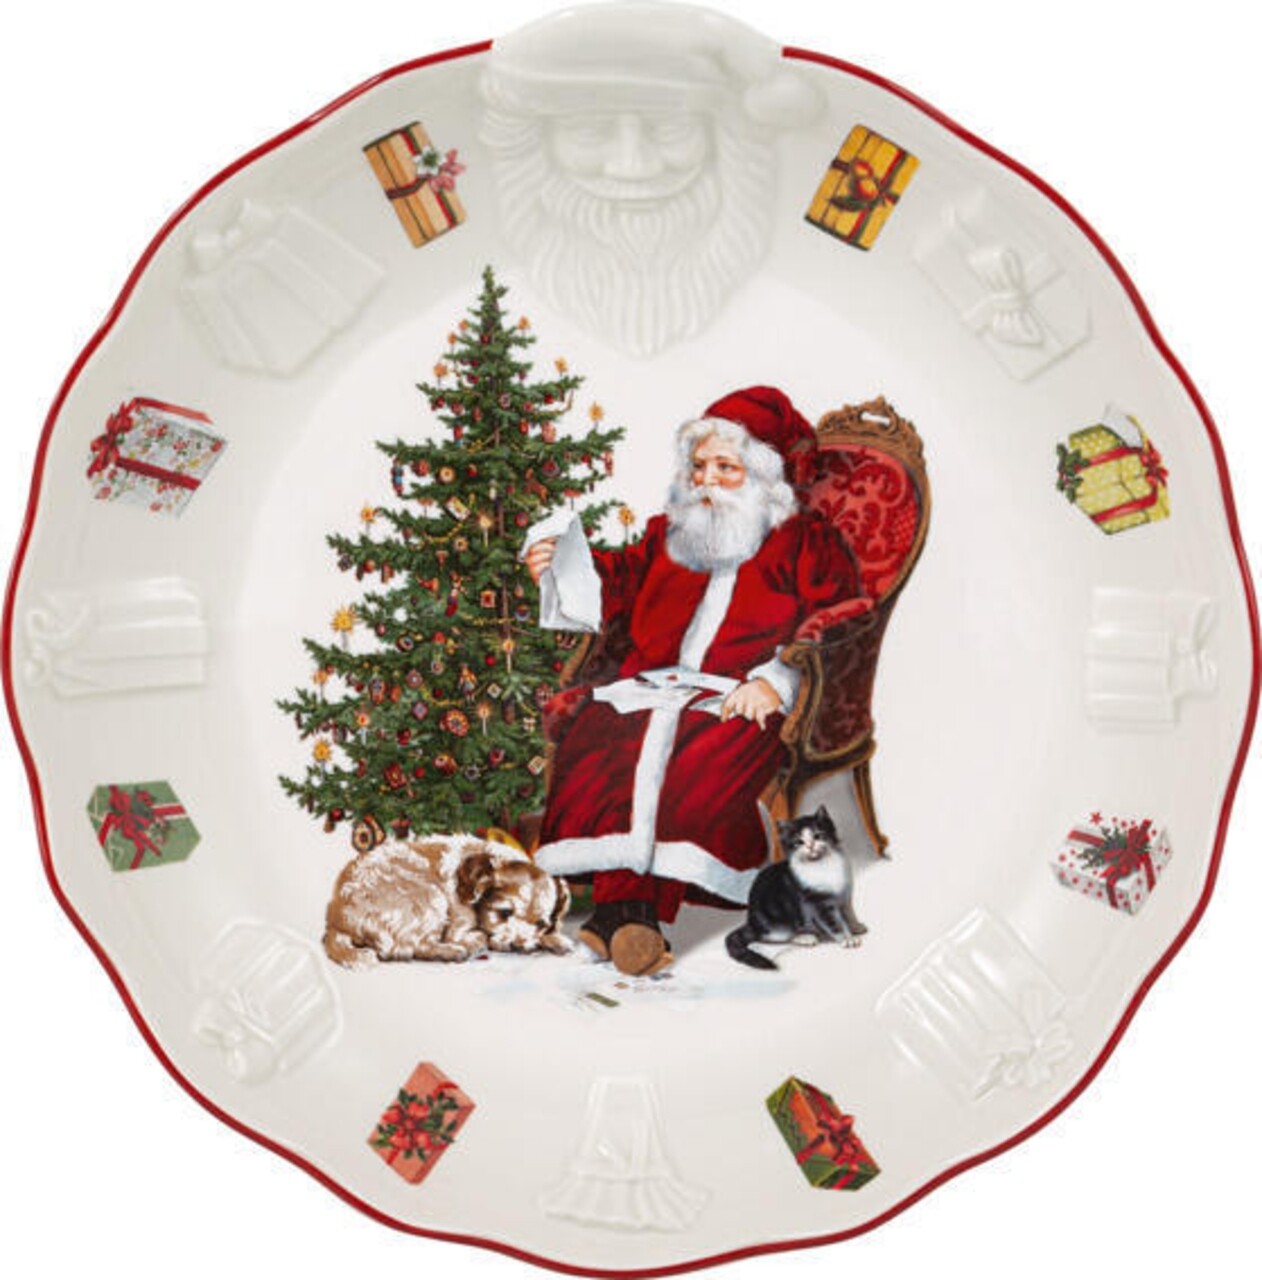 Tálalótál, Villeroy & Boch, Toy's Fantasy Santa Relief, 24 cm, prémium porcelán, kézzel festett